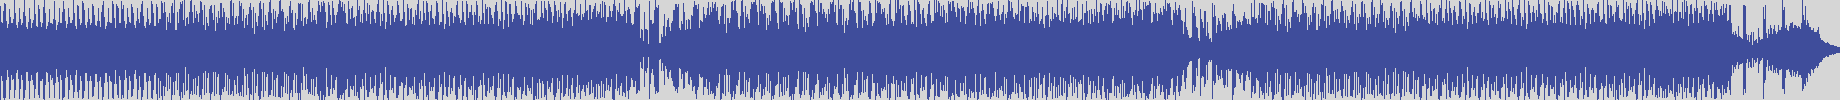 nf_boyz_records [NFY077] Ralphie Boss - Vestania [2nd Night Mix] audio wave form